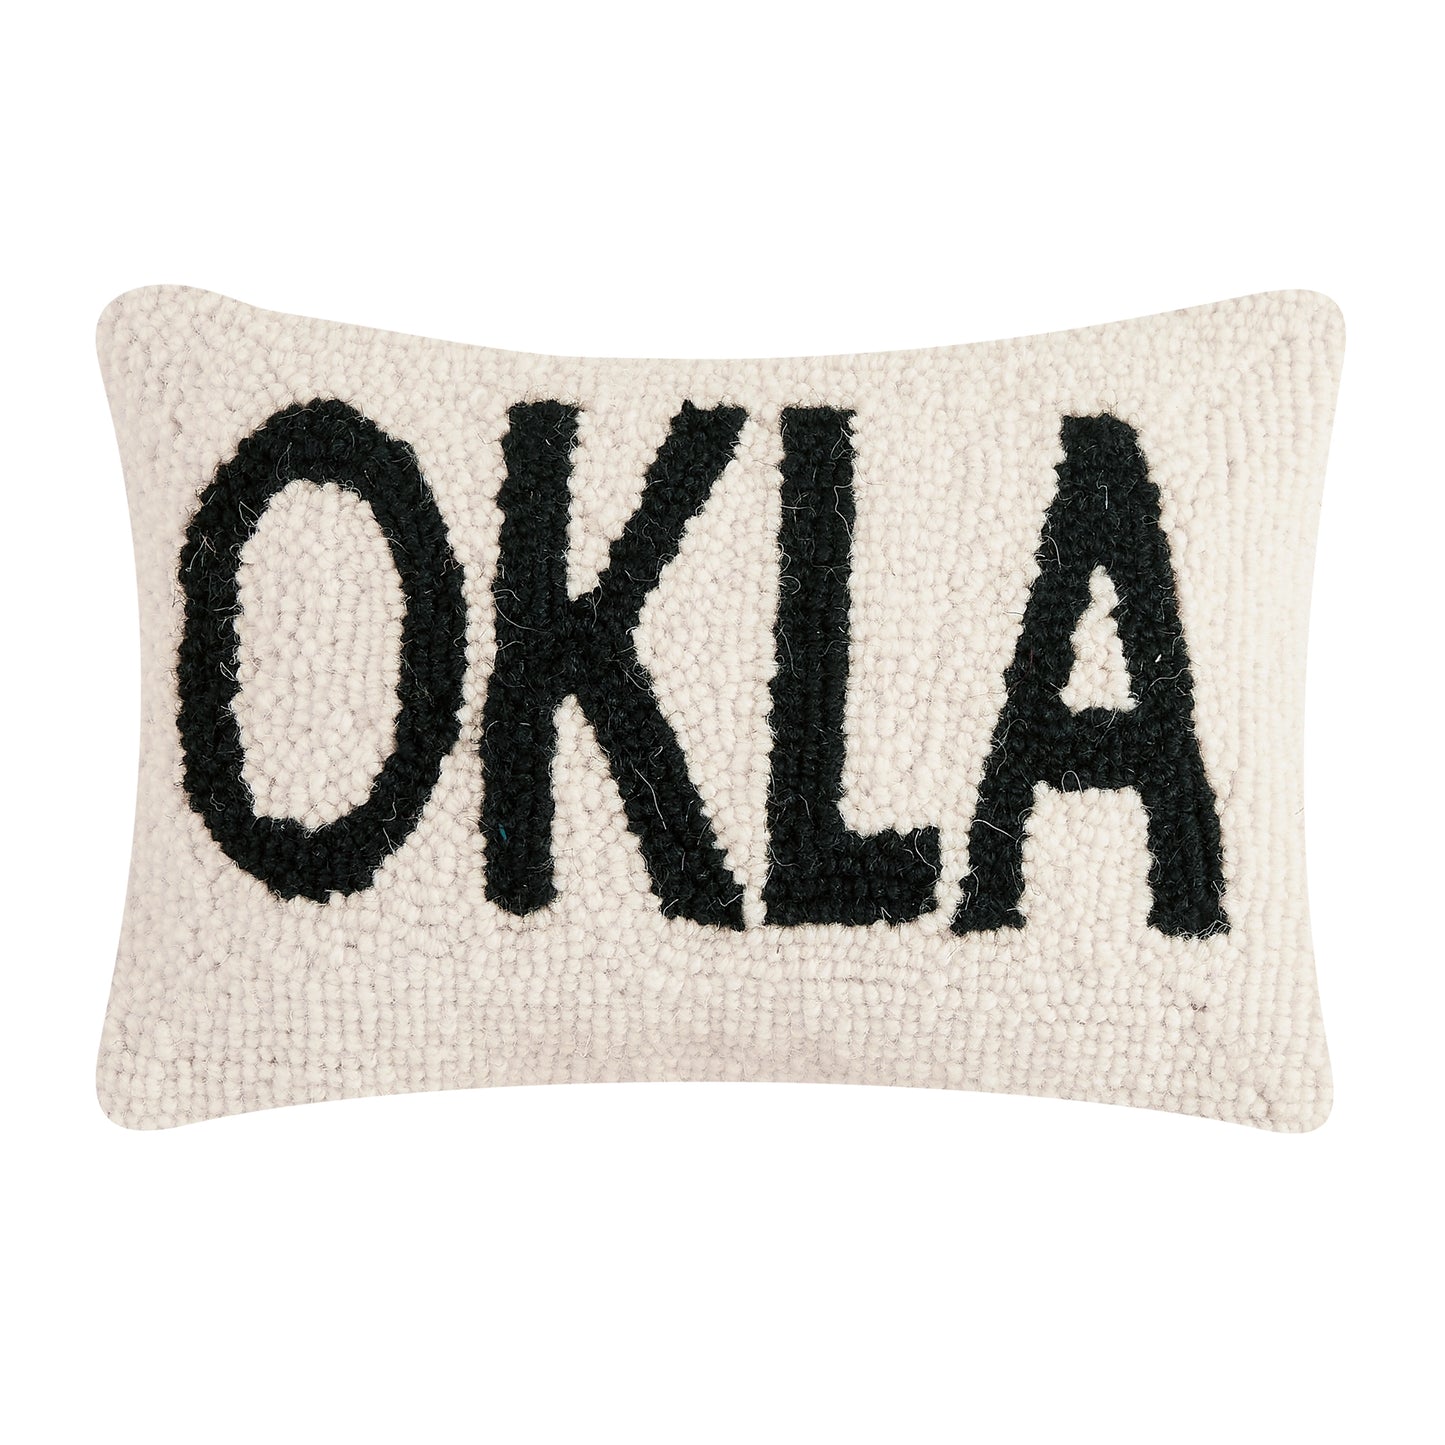 OKLA Pillow 8x12